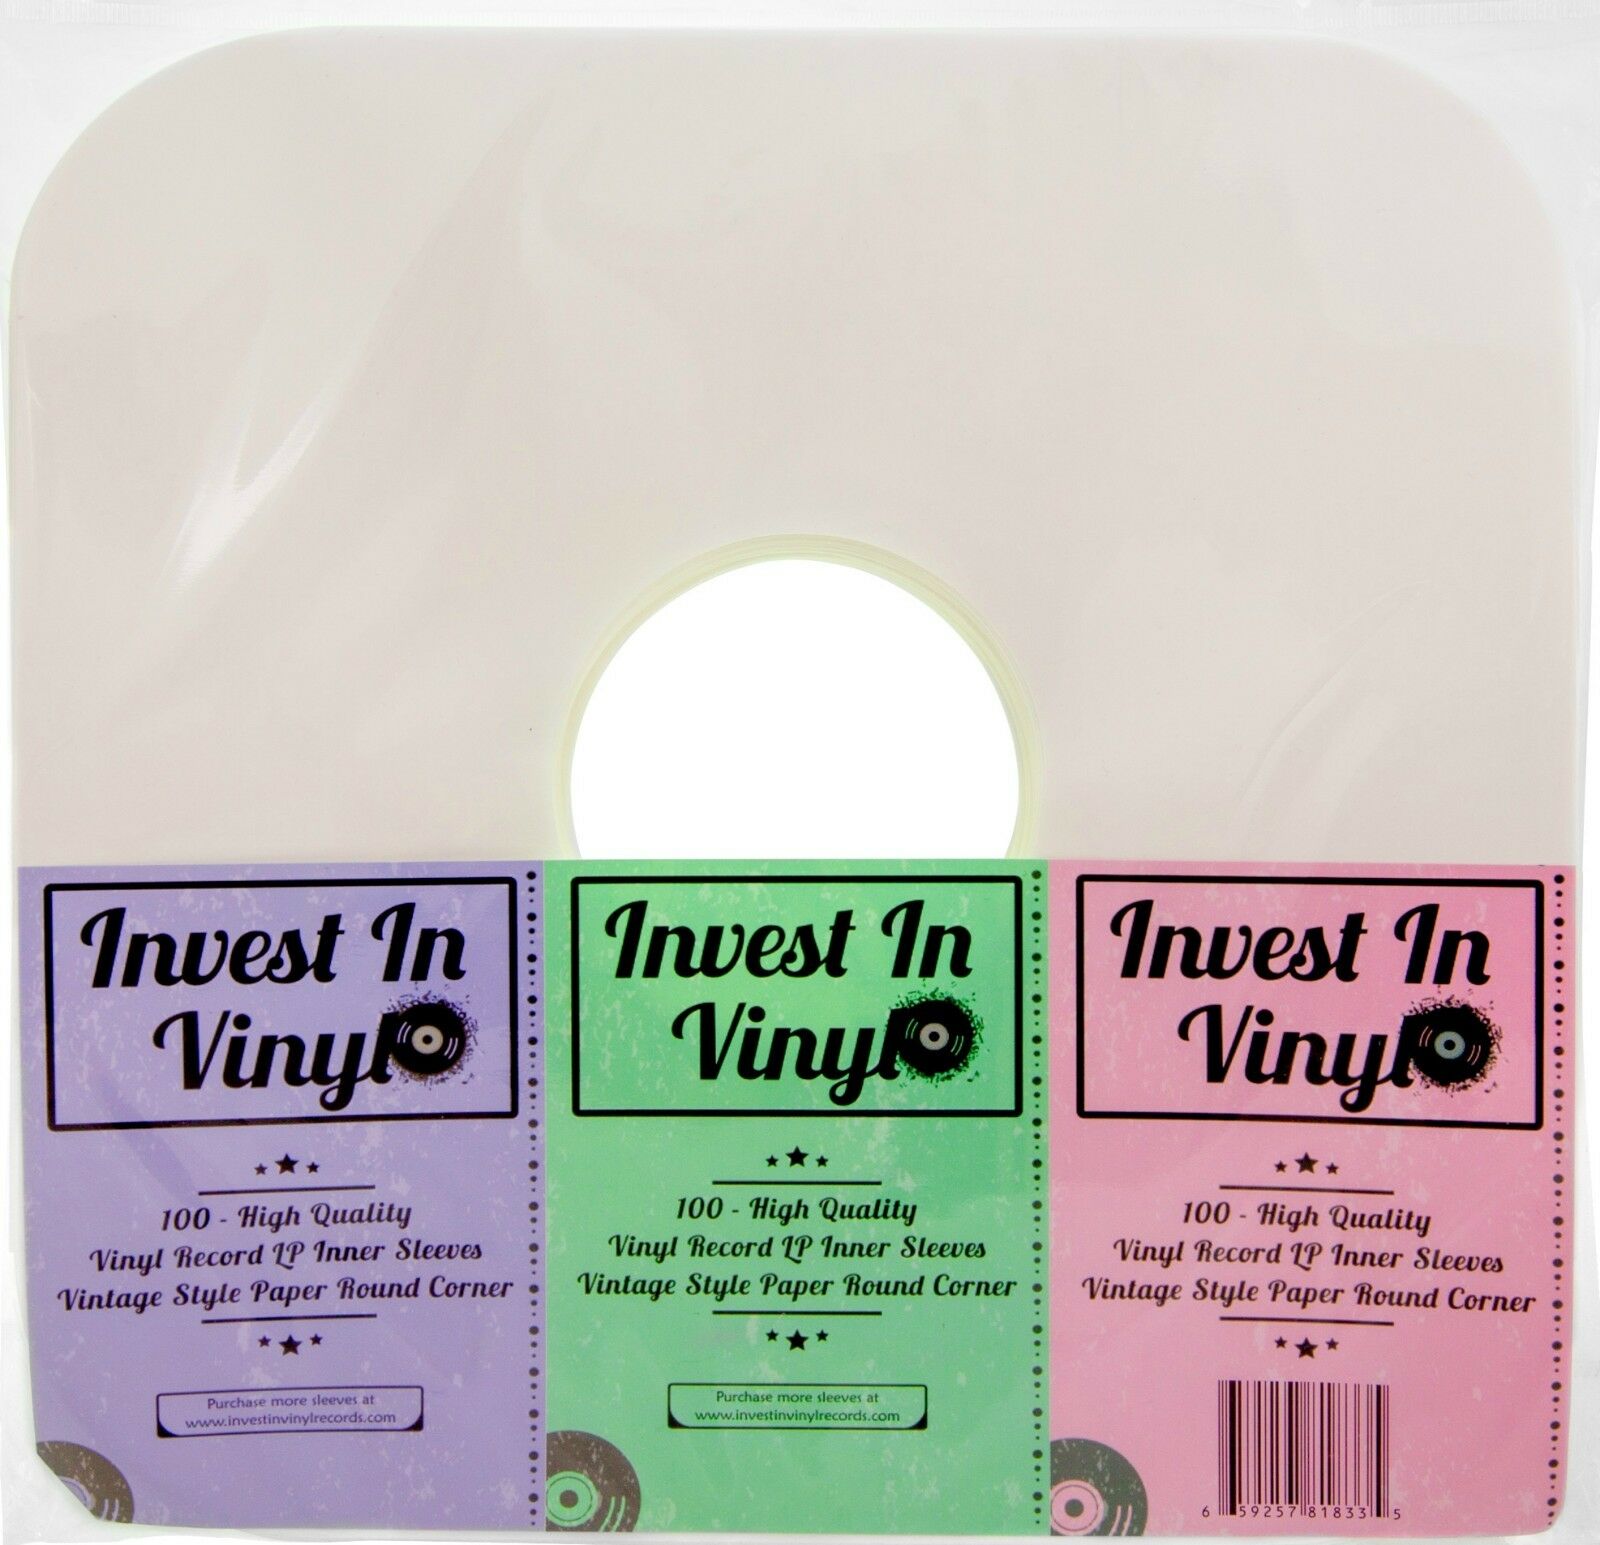 100 Lp Vinyl Record Inner Sleeves Heavy Stock Ivory White Paper 12" 33 Rpm